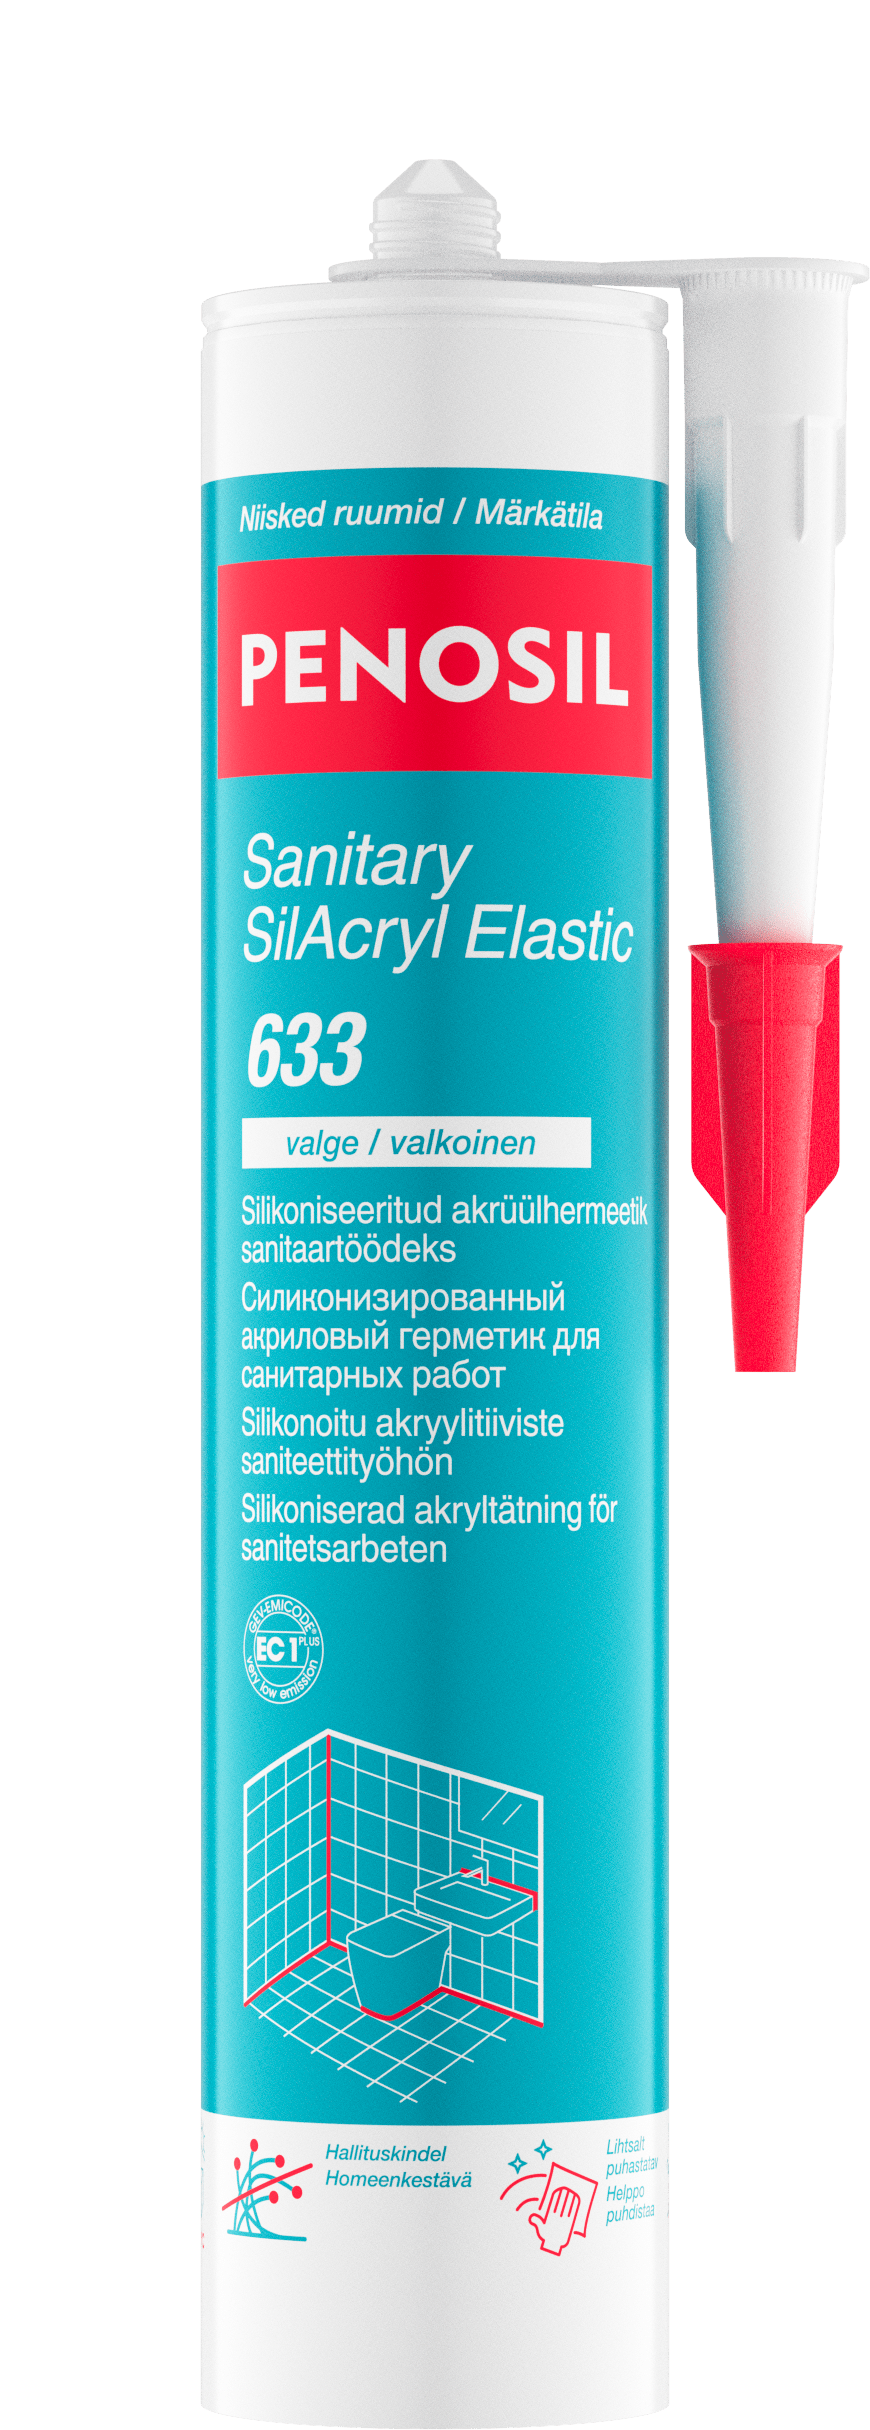 PENOSIL Sanitary SilAcryl Elastic 633 silikooniseeritud sanitaarakrüül